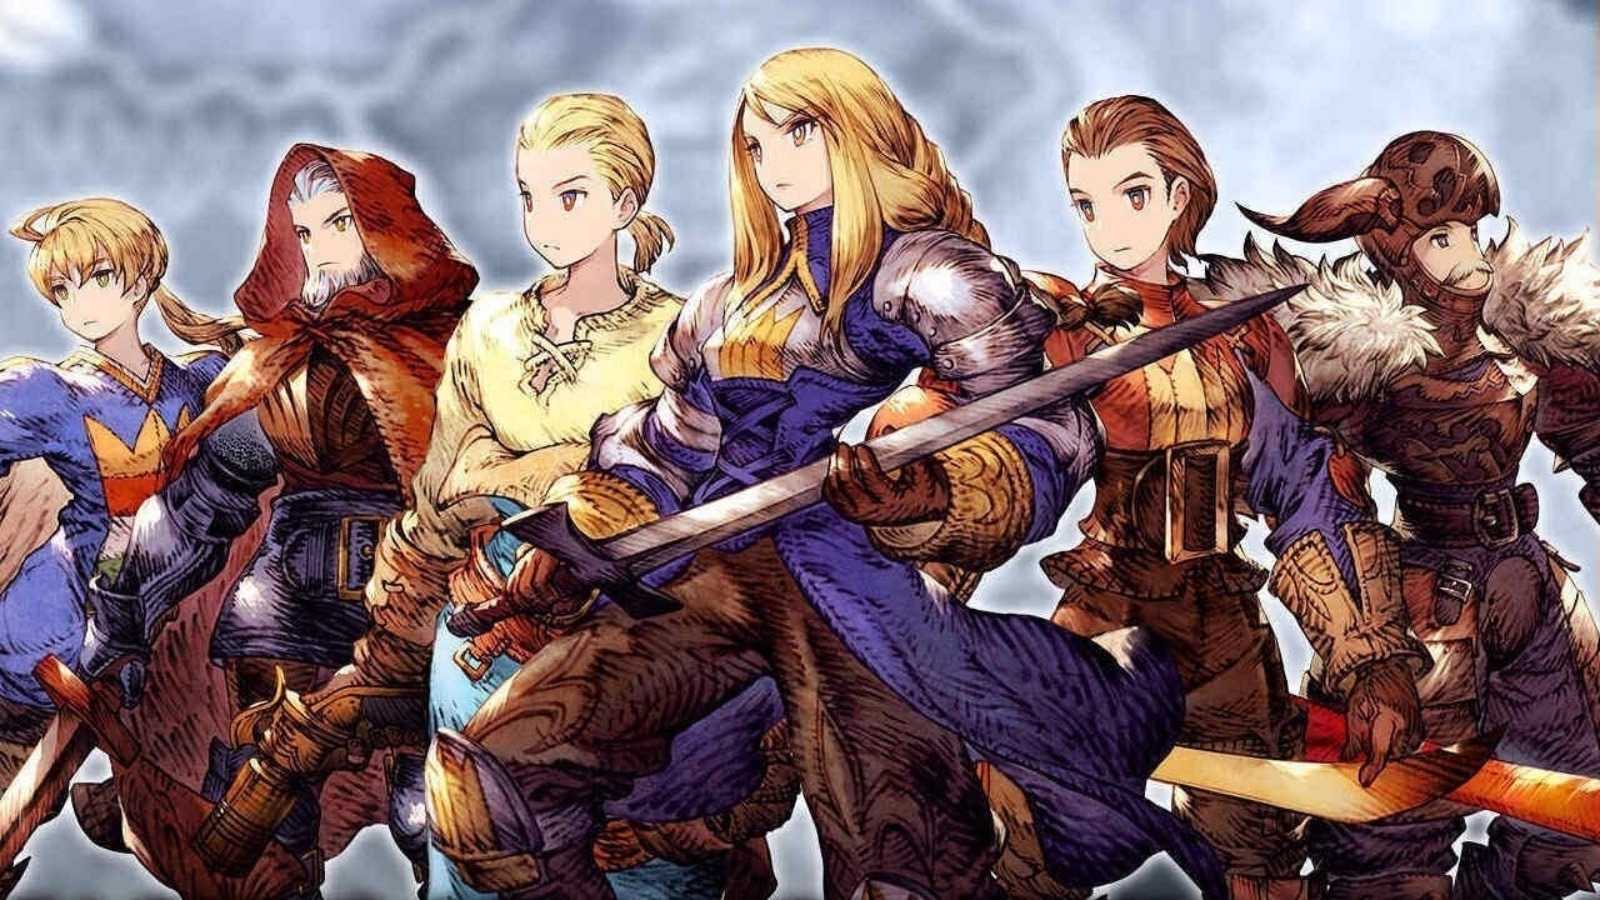 Final Fantasy Tactics Remaster podría tener un lanzamiento según informes